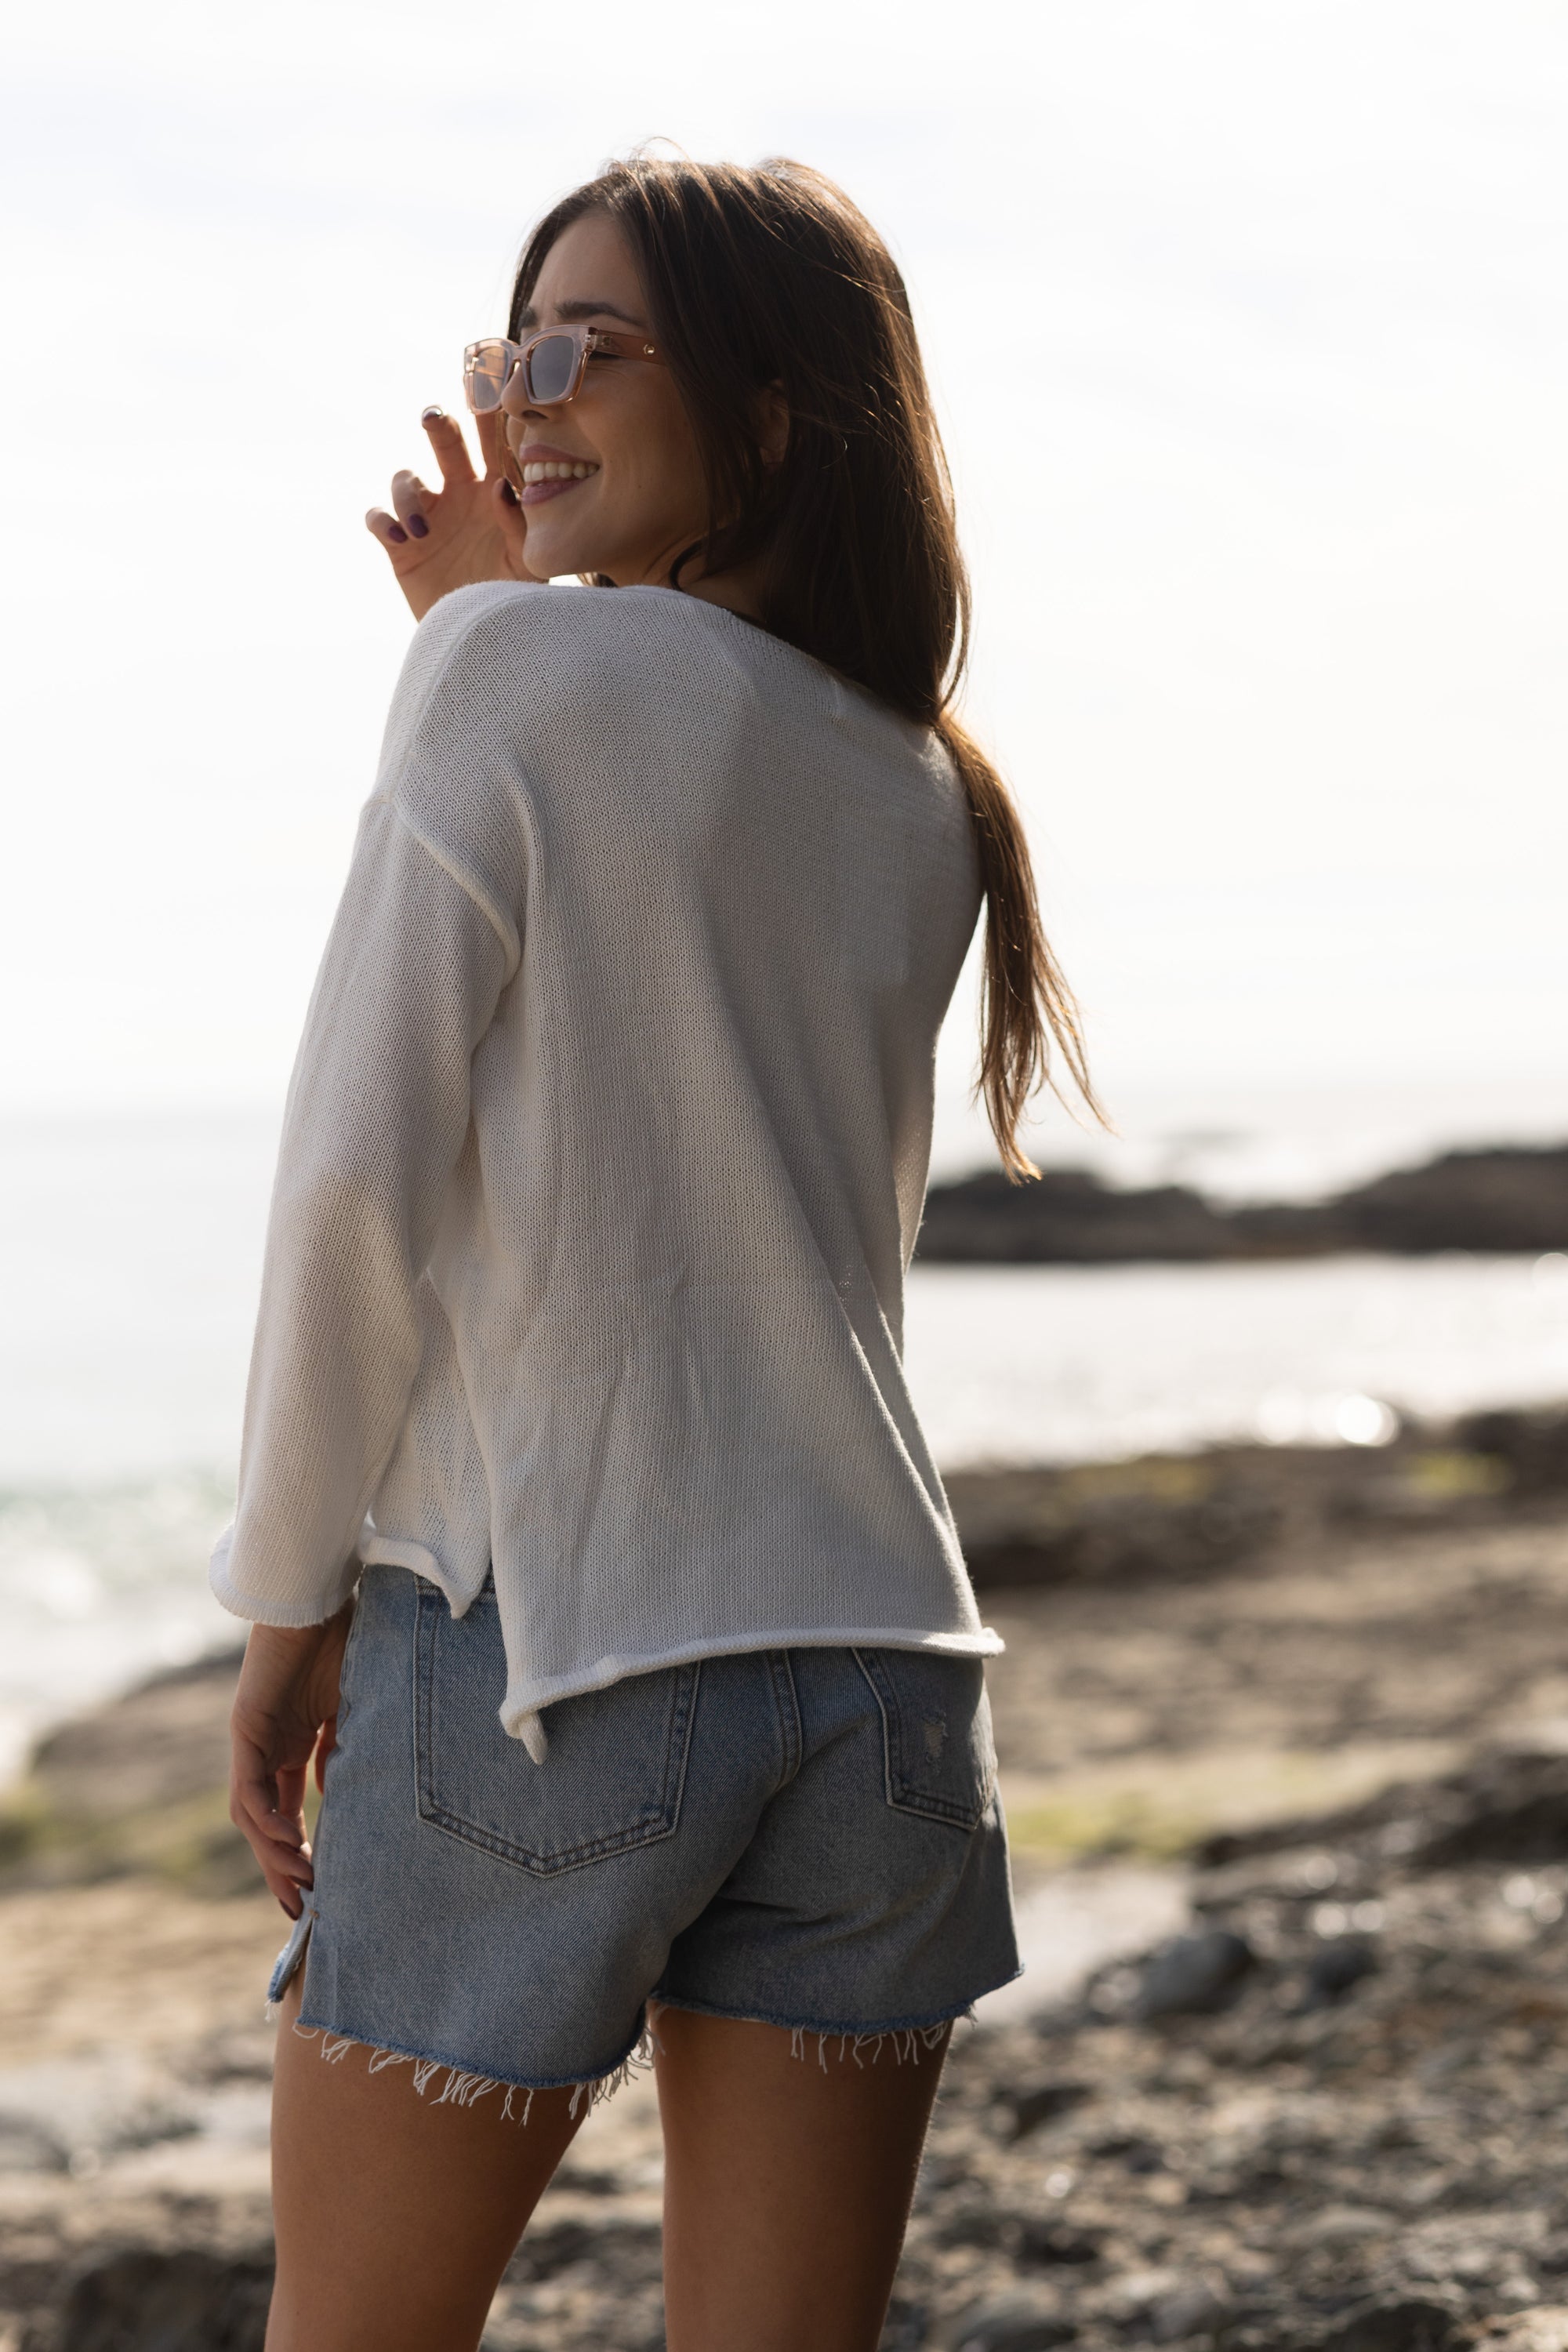 Laguna Beach Sweater / White